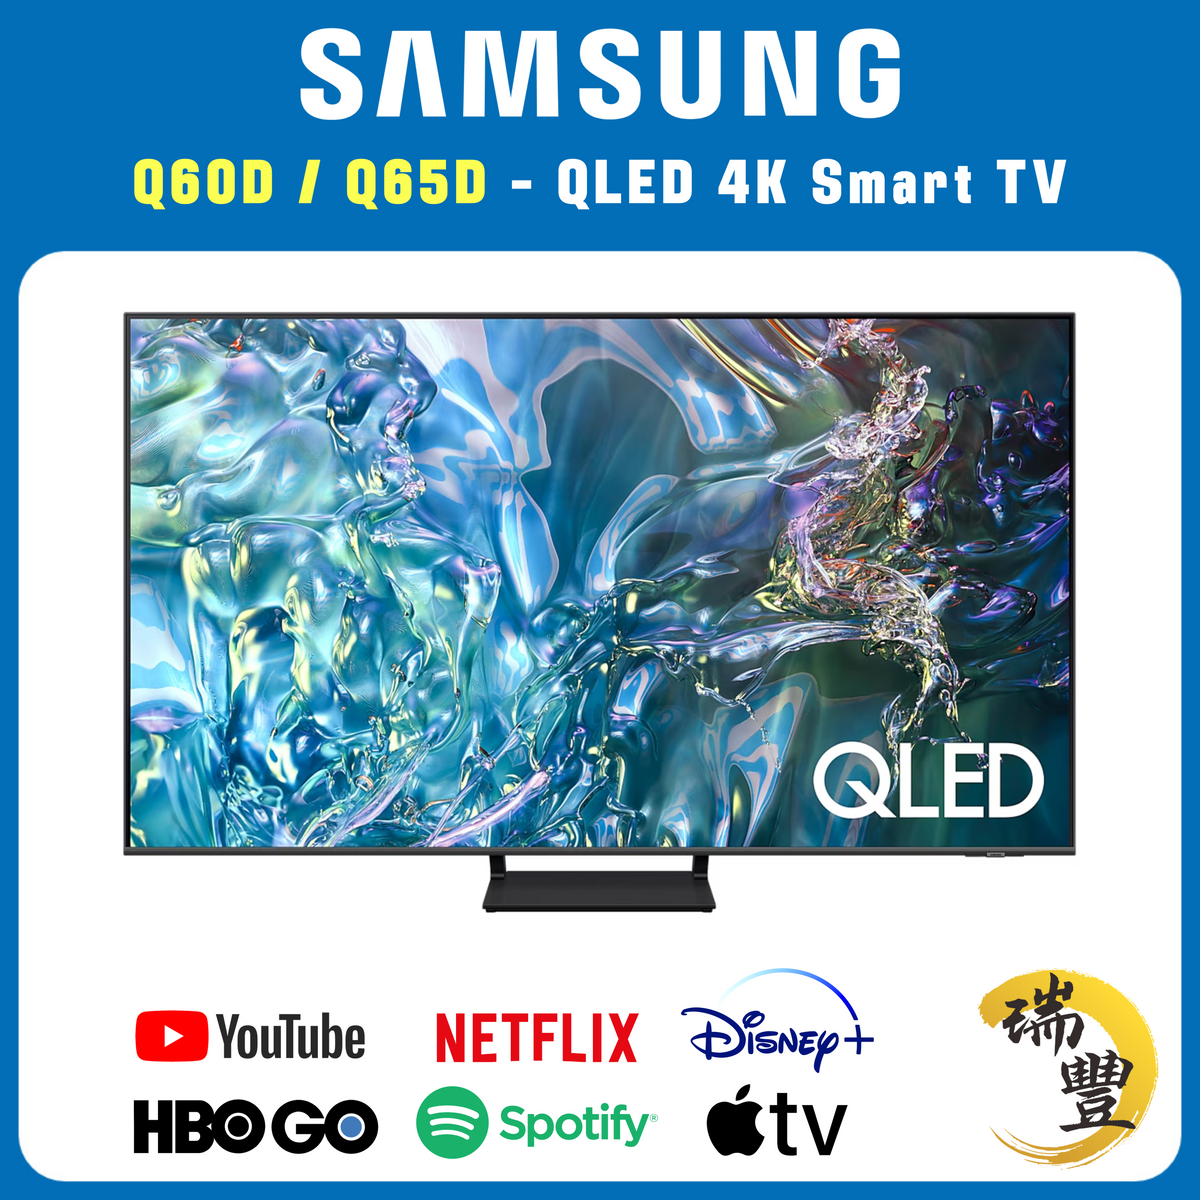 SAMSUNG三星 QLED系列 65吋 Q60D/Q65D 4K超高清智能電視[瑞豐1年保養][保證全新機][隨機發貨]